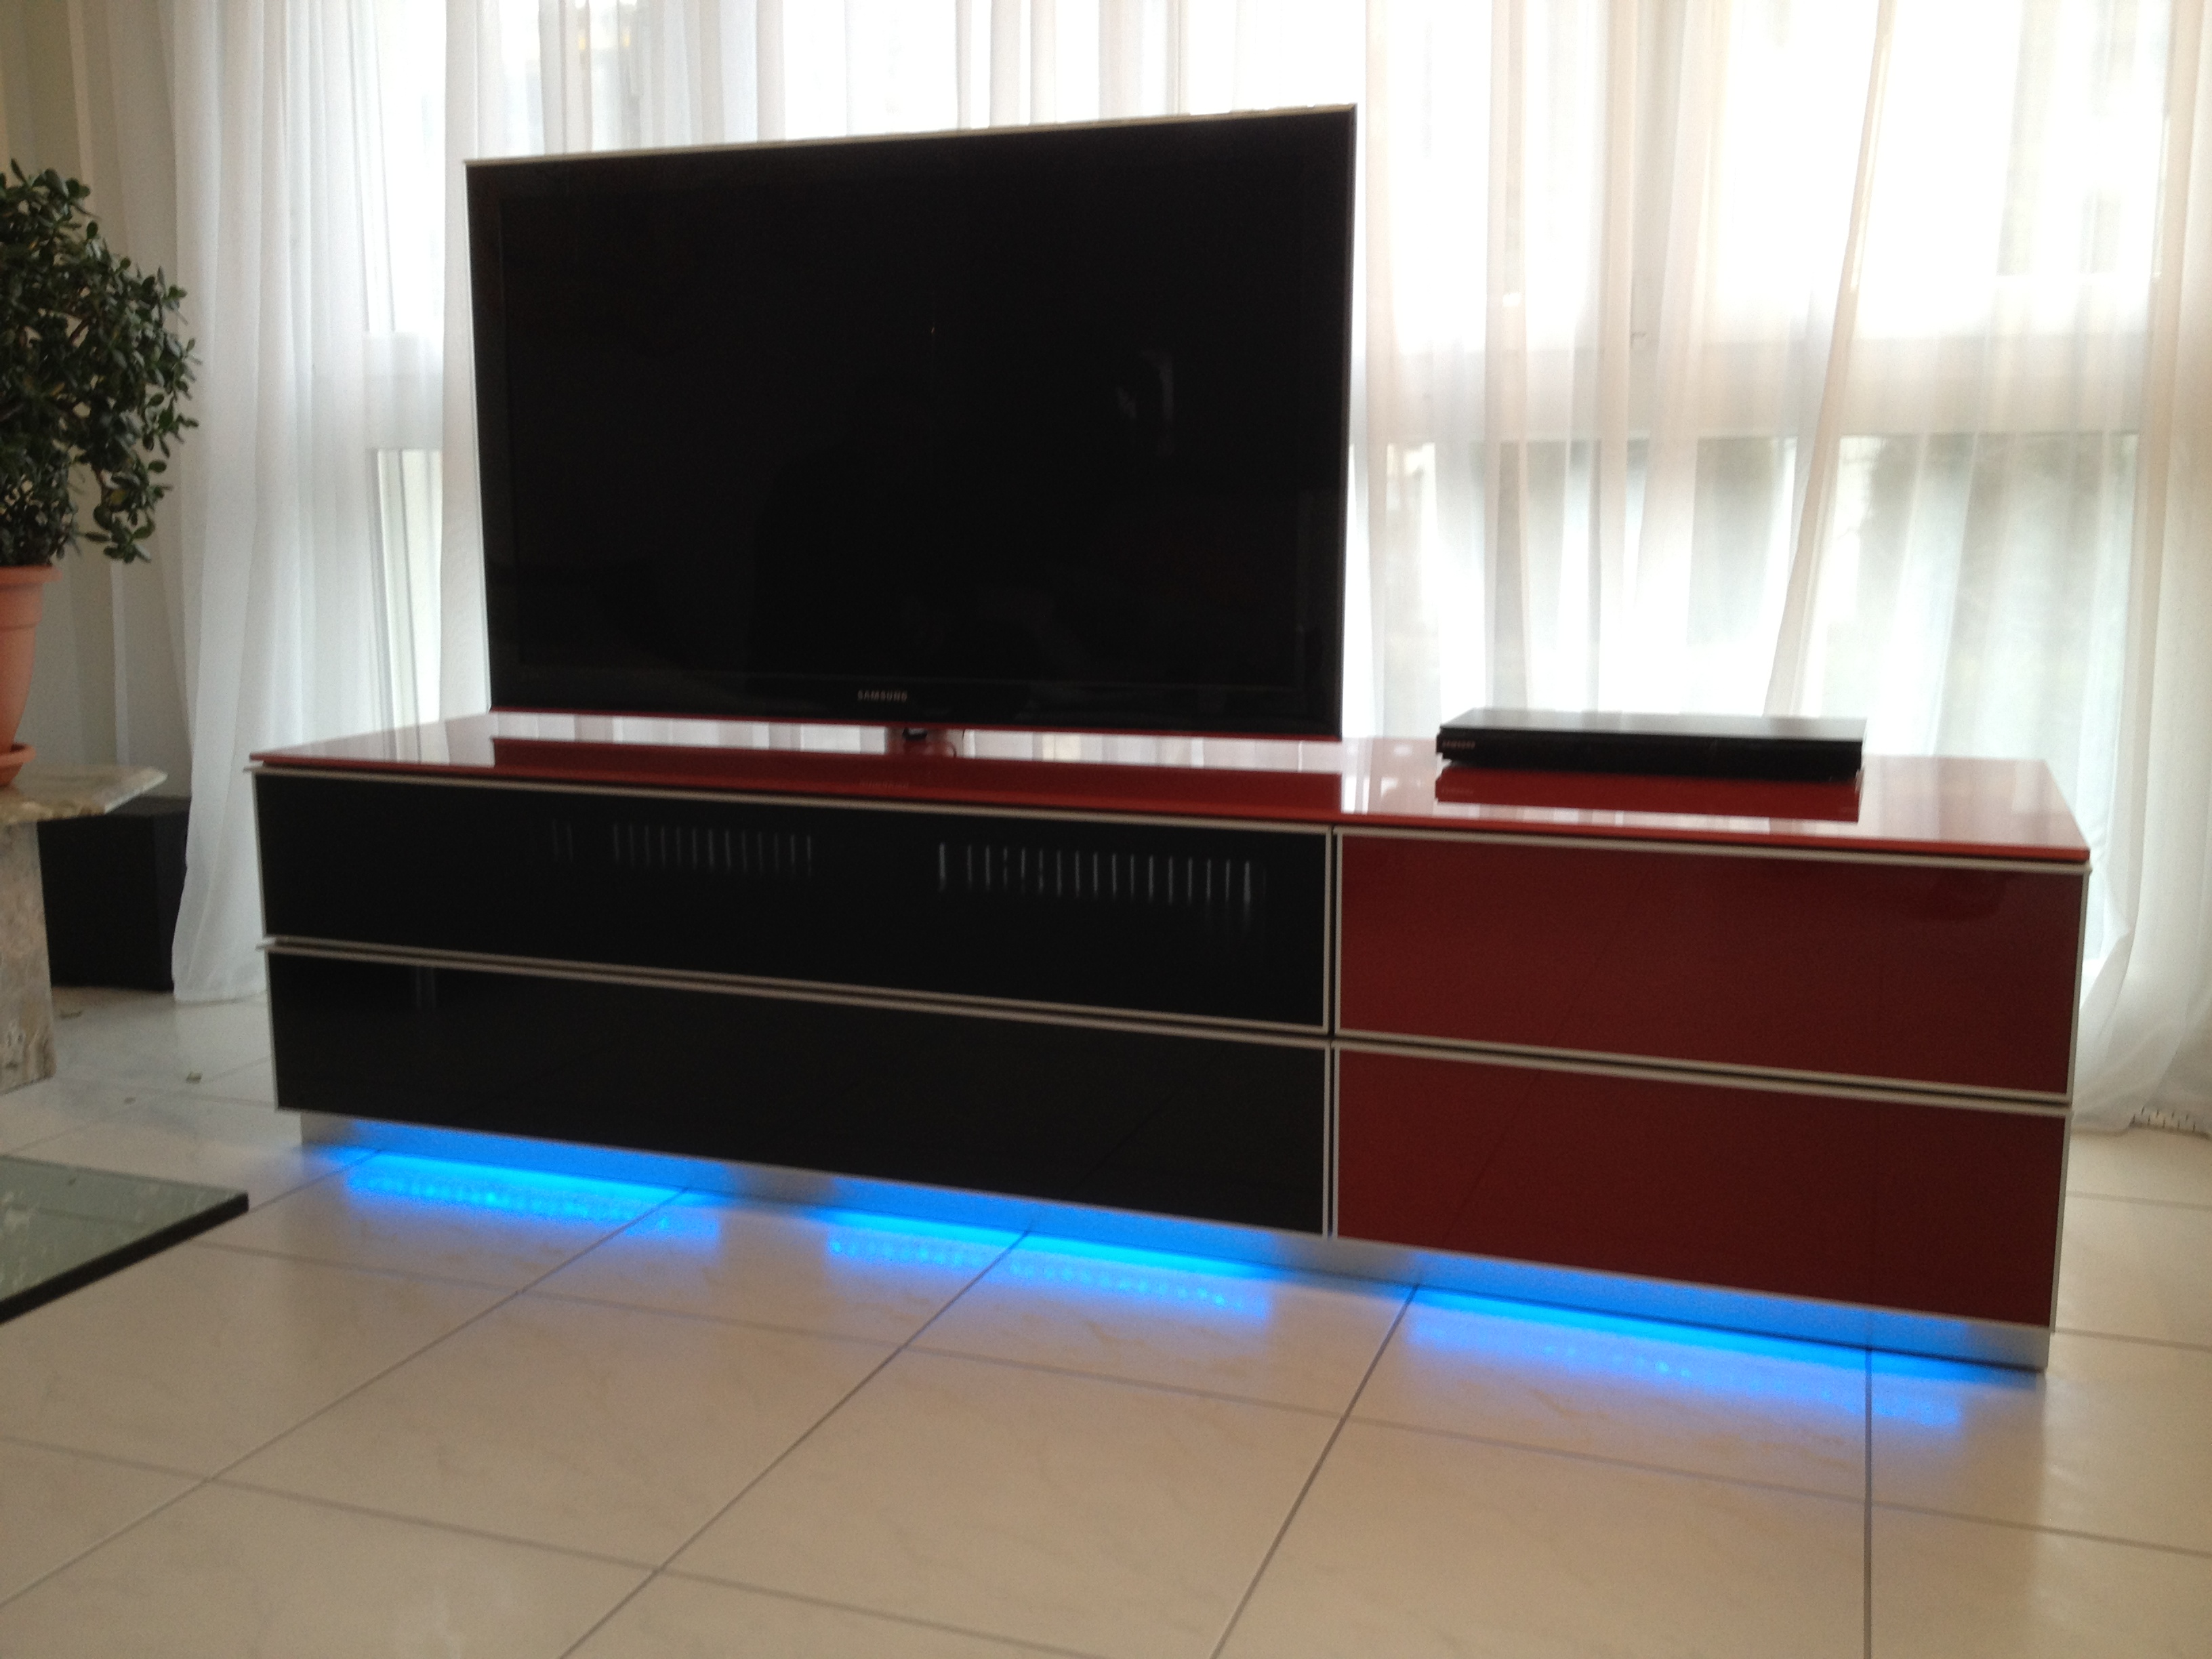 Ausgeschalteter  TV im Wohnzimmer mit blauem Licht am TV-Möbel